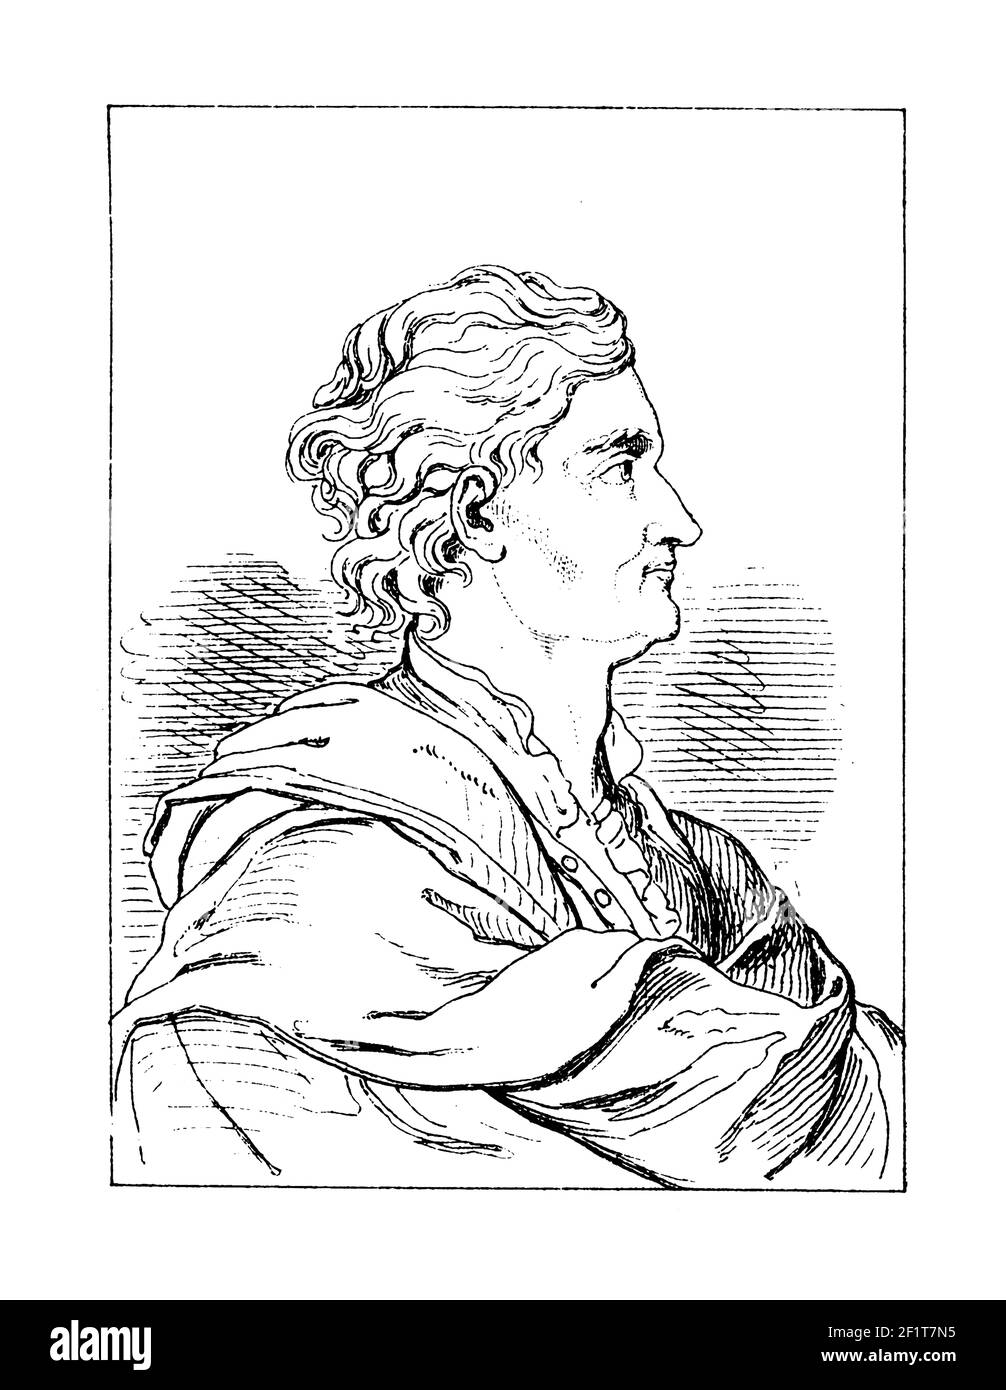 Illustration du XIXe siècle d'un portrait de Sir Isaac Newton, physicien anglais, mathématicien, astronome, philosophe naturel, alchemist et théolog Banque D'Images